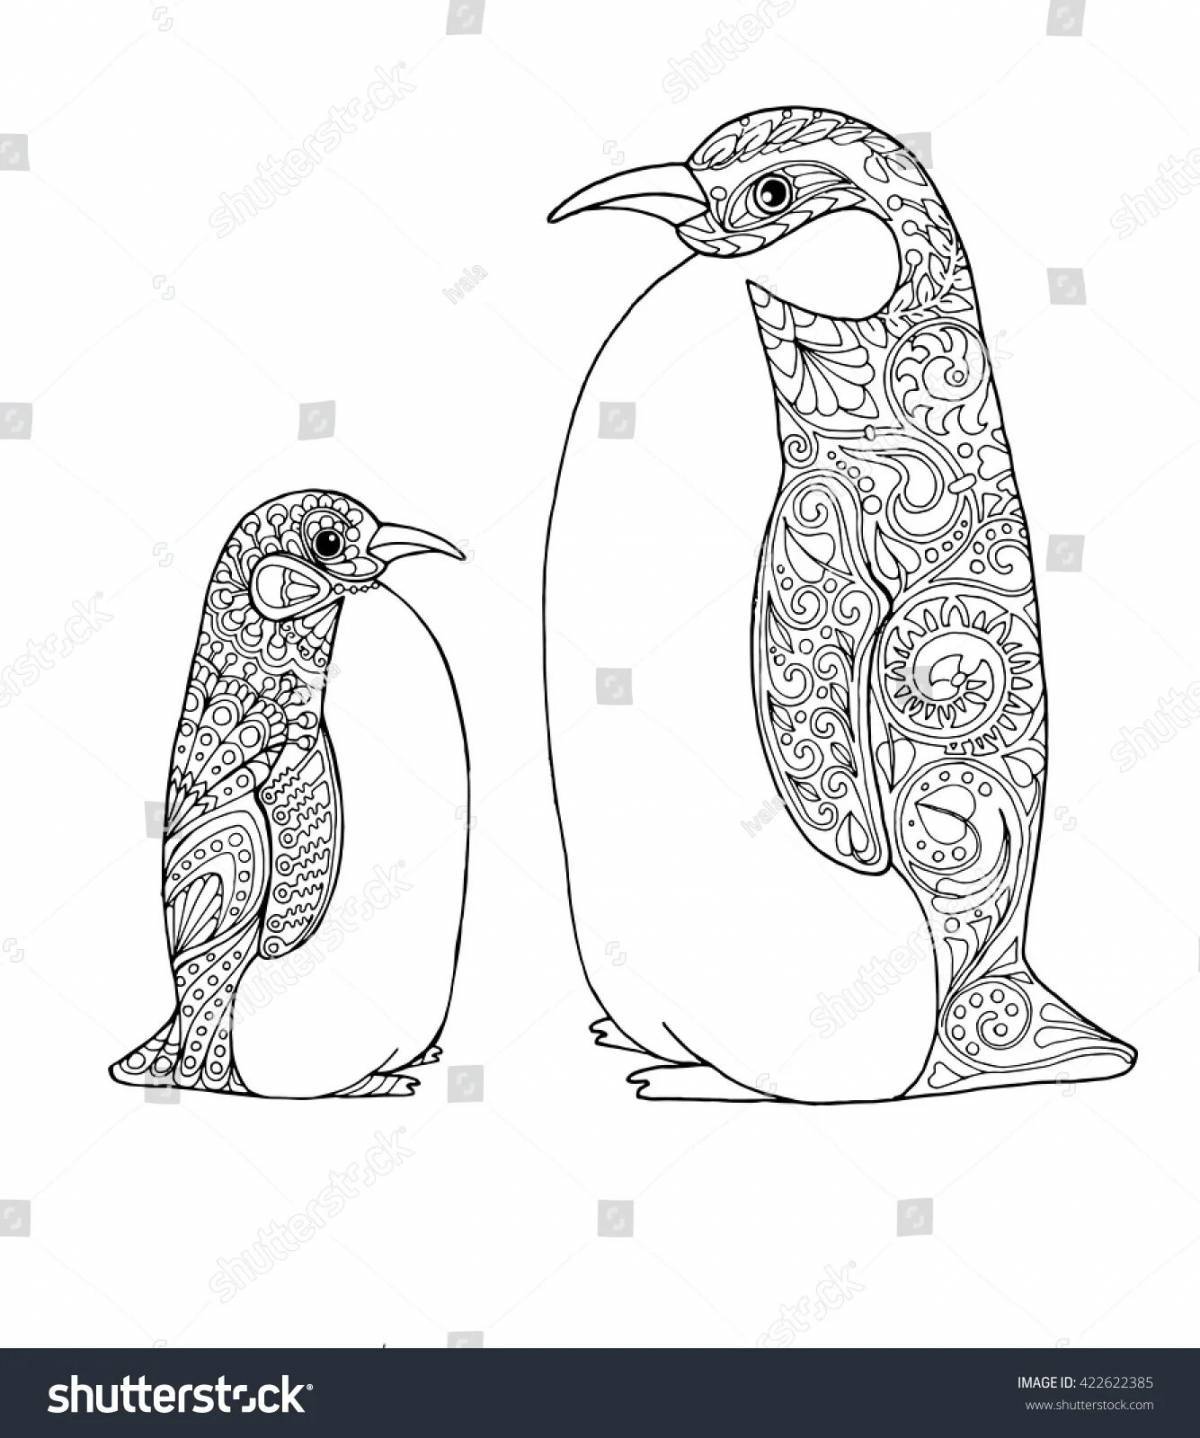 Антистресс пингвин #12